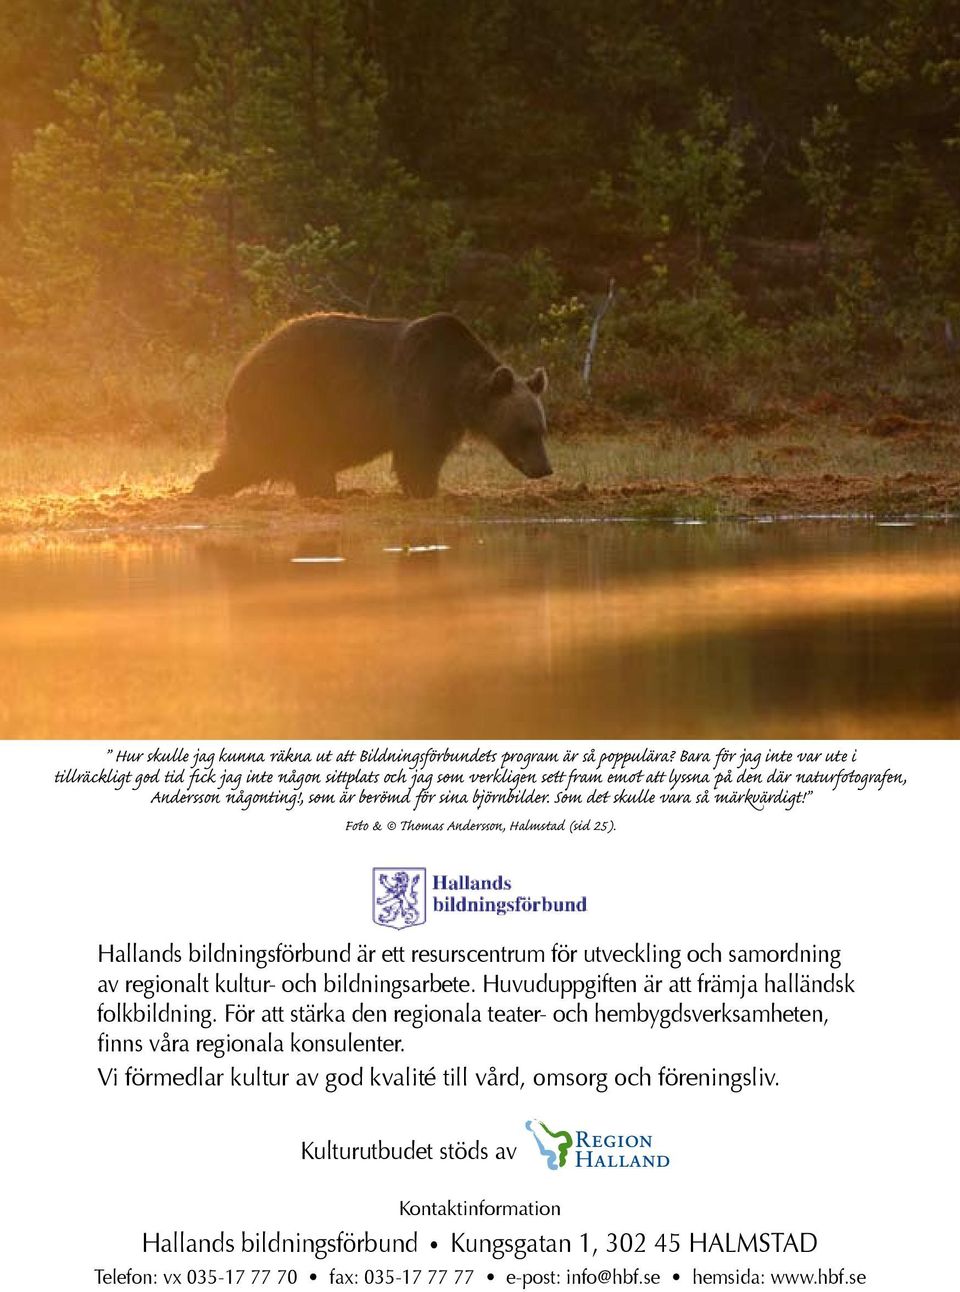 , som är berömd för sina björnbilder. Som det skulle vara så märkvärdigt! Foto & Thomas Andersson, Halmstad (sid 25).